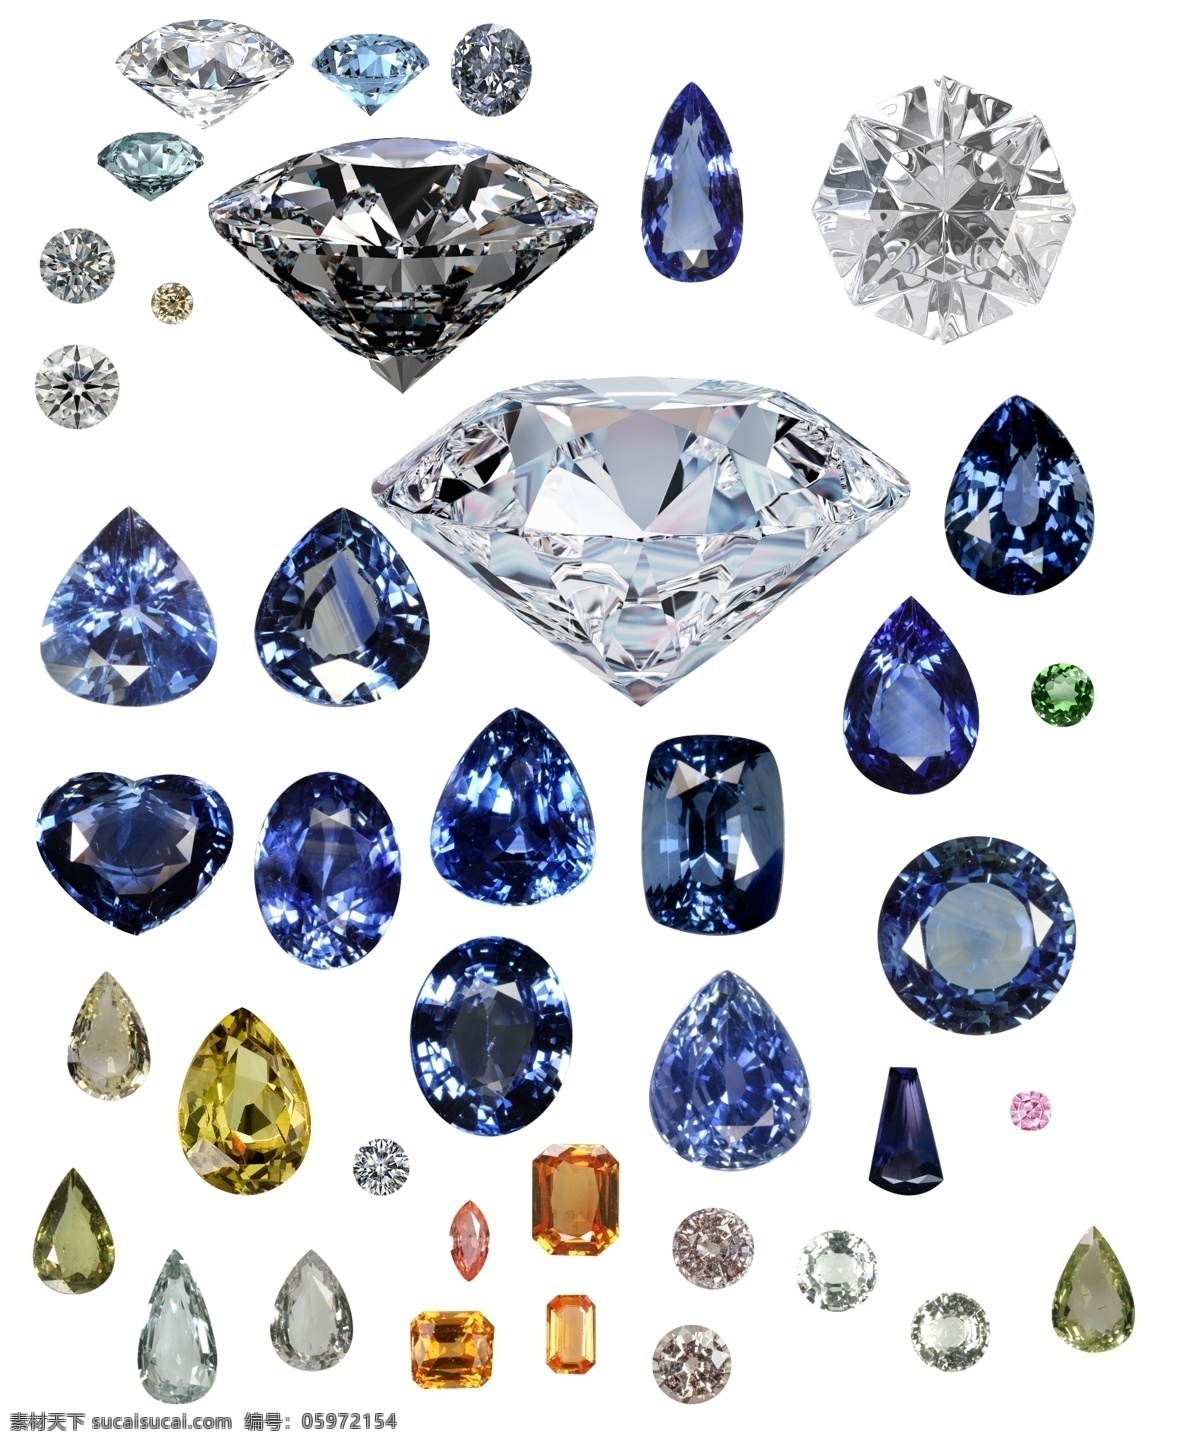 钻石素材 钻石 钻石图片 钻石图片大全 蓝钻 粉钻 黄钻 钻石图片素材 设计素材 分层